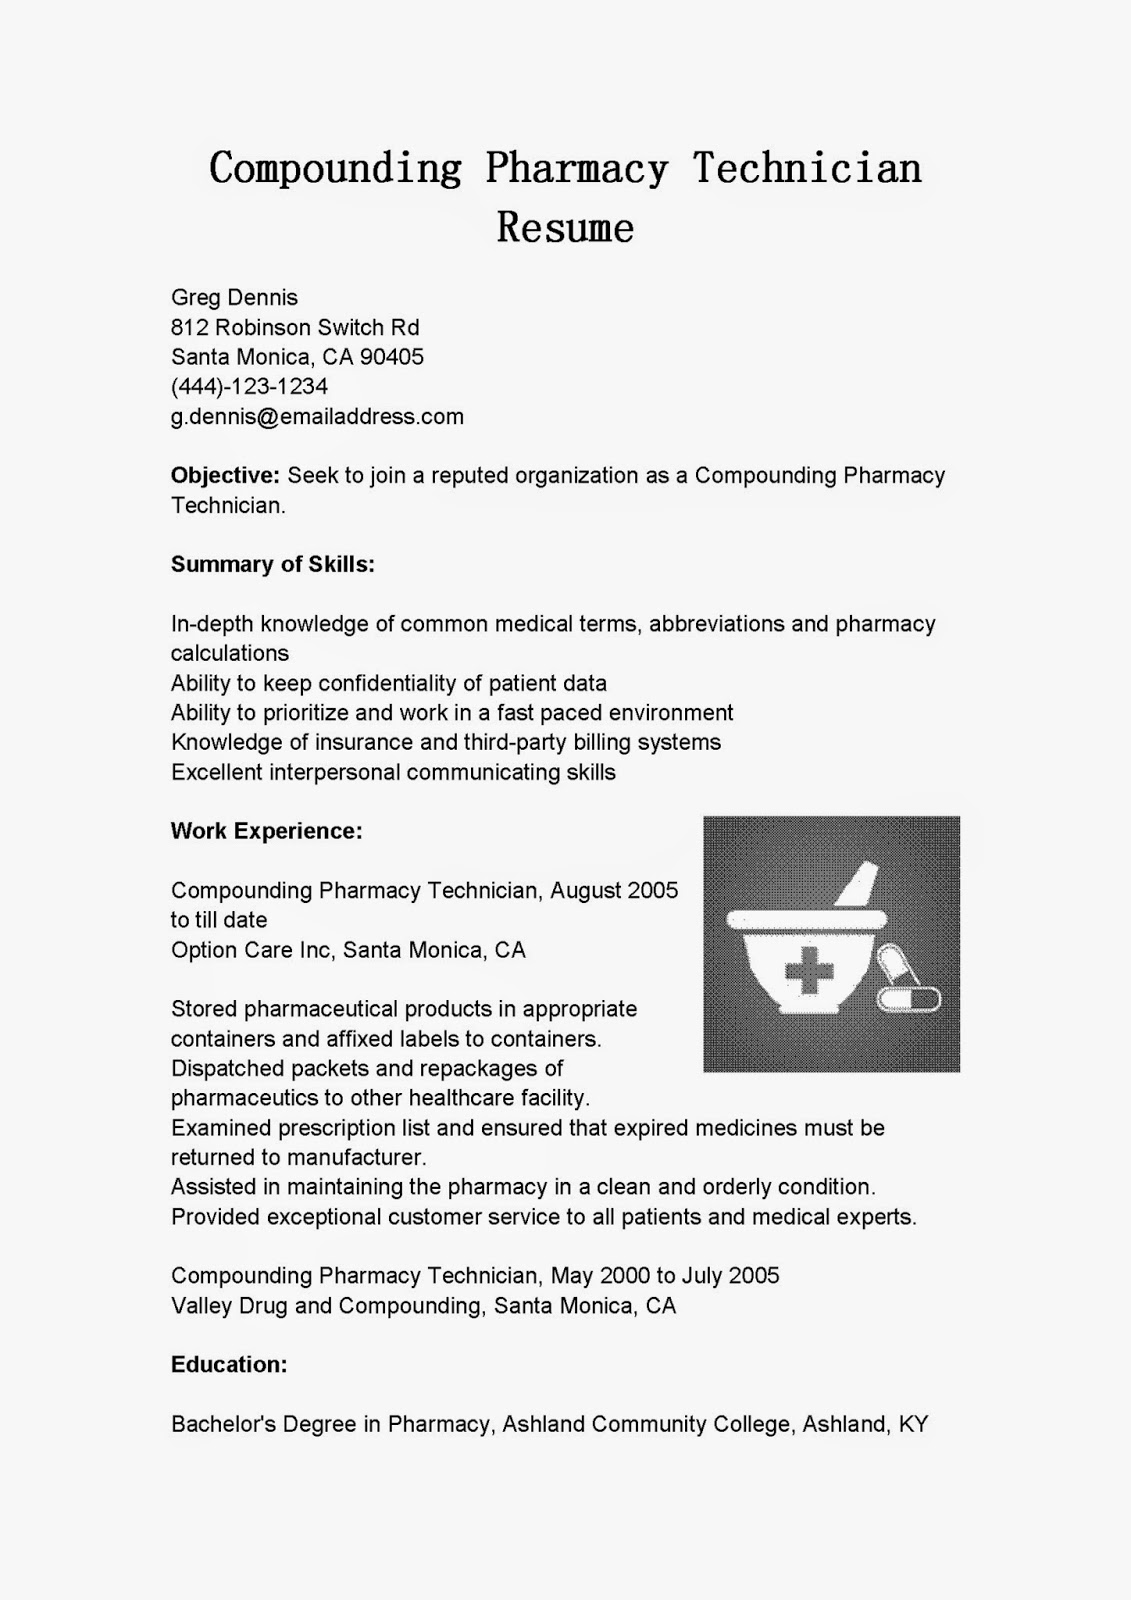 resume samples compounding pharmacy technician resume sample